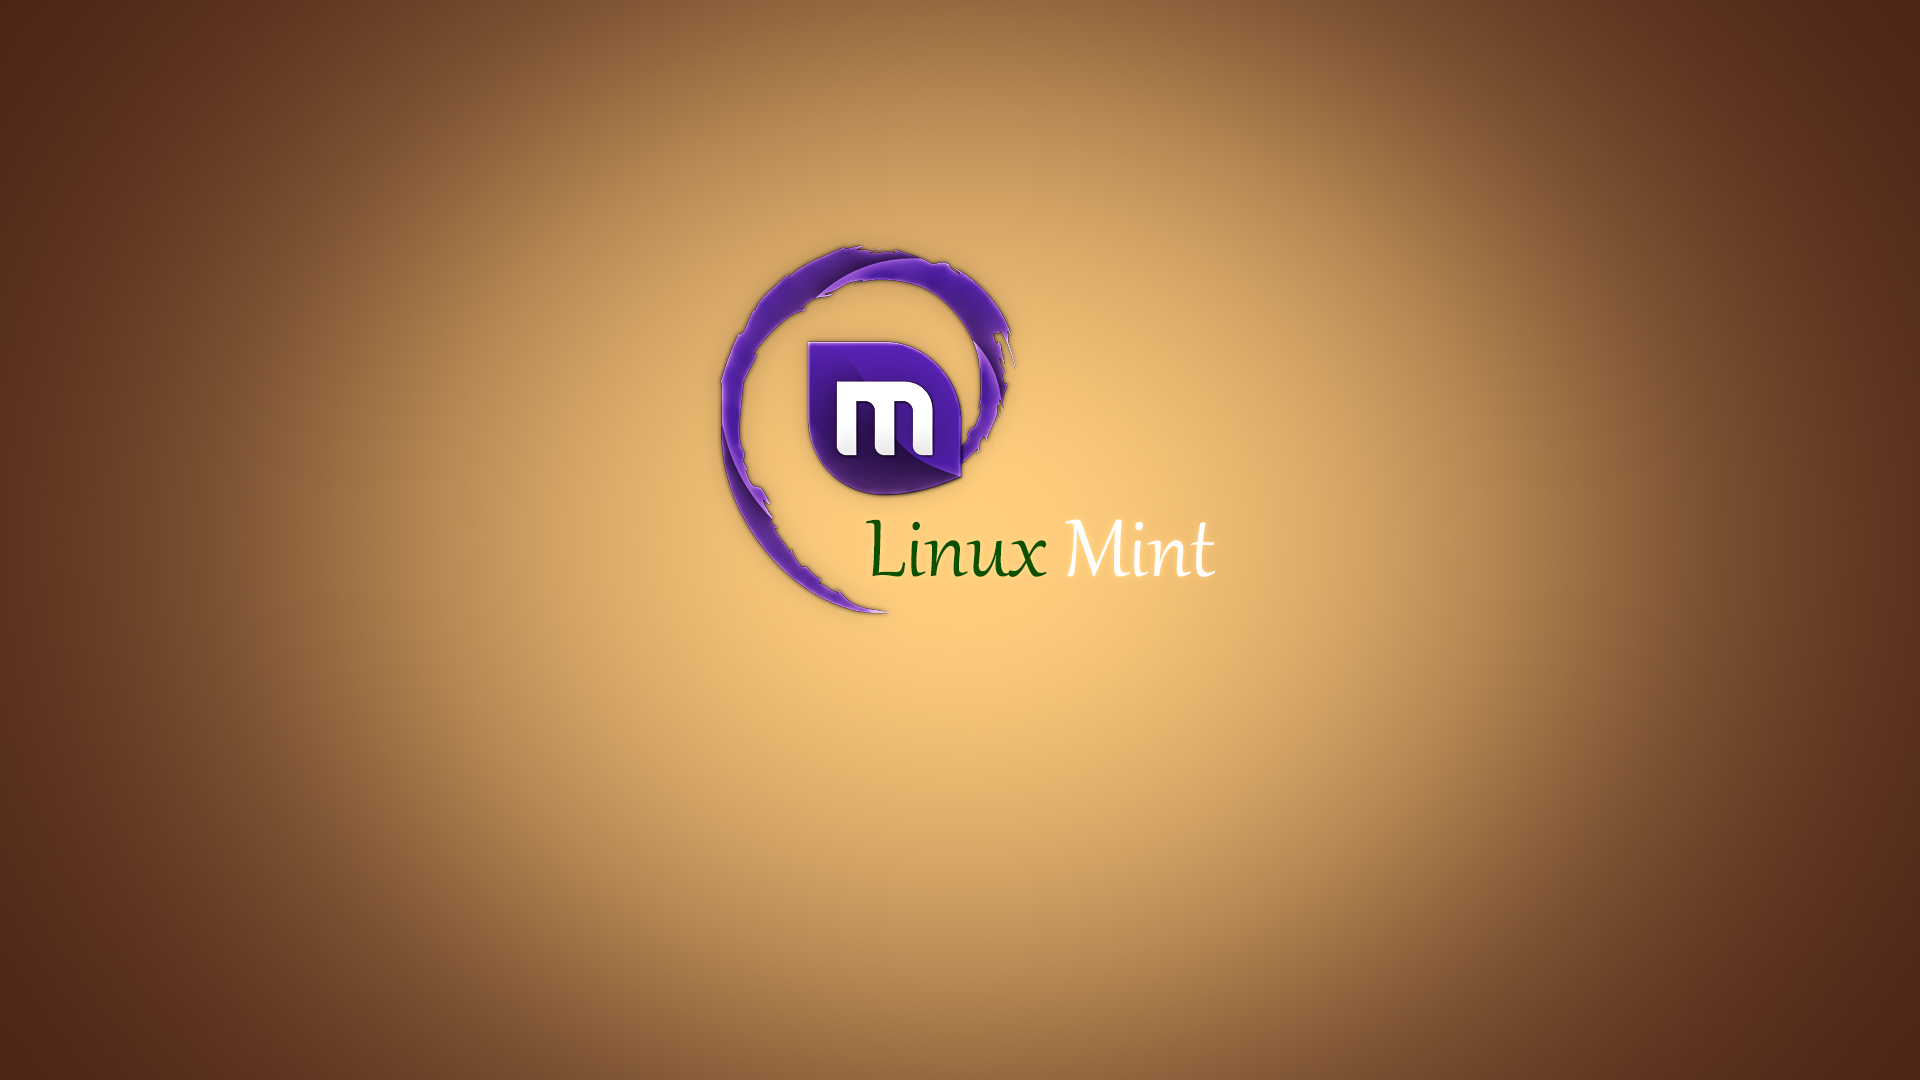 Linuxmint Hd Wallpapers Pixelstalk Net